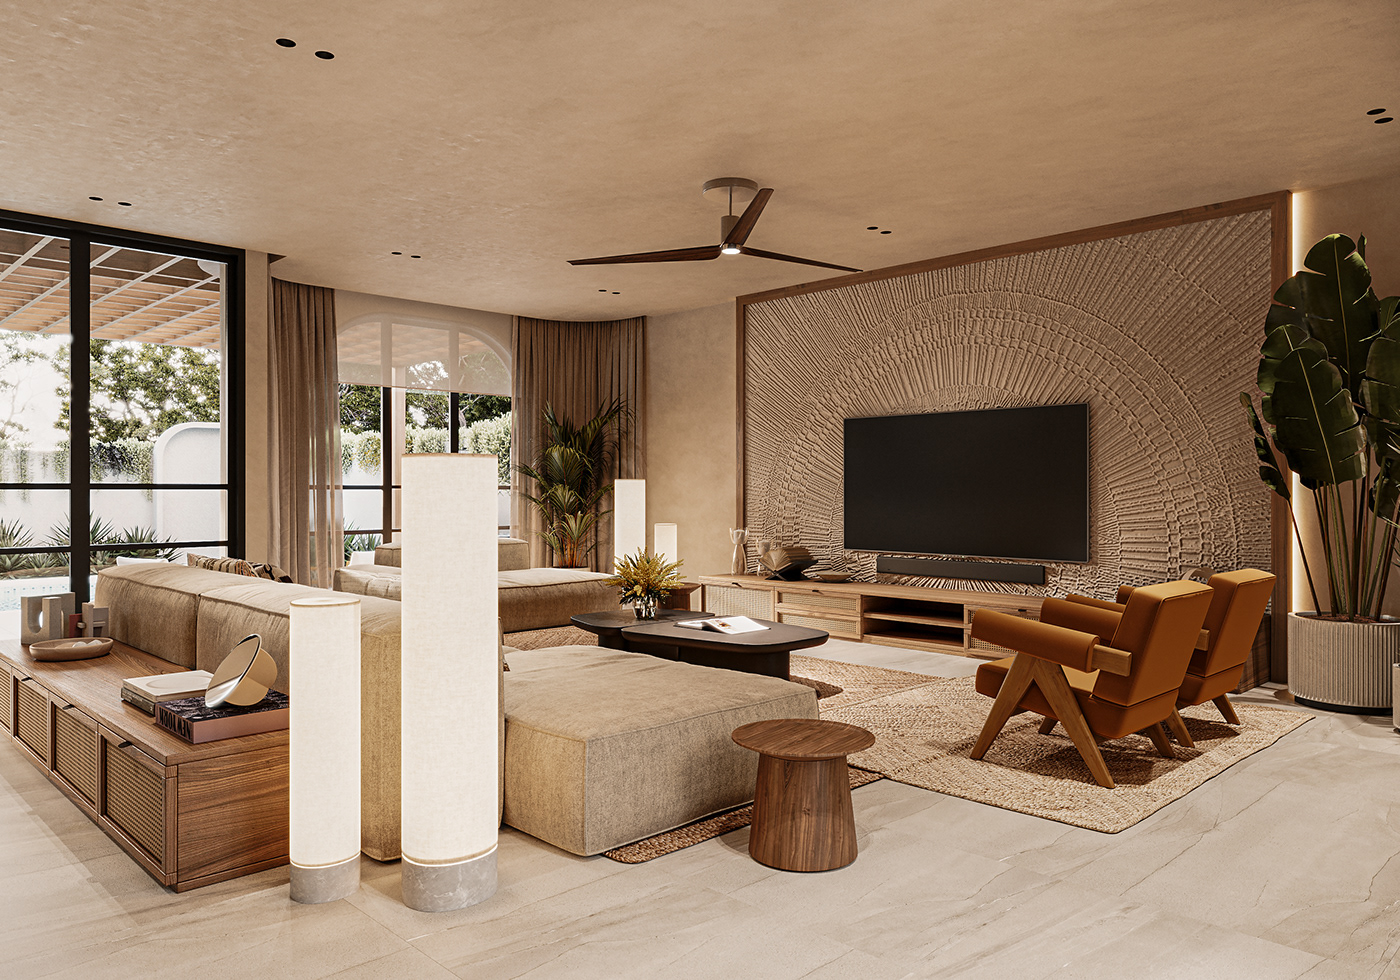 Villa architecture visualization interior design  modern archviz Render 3D exterior 3ds max